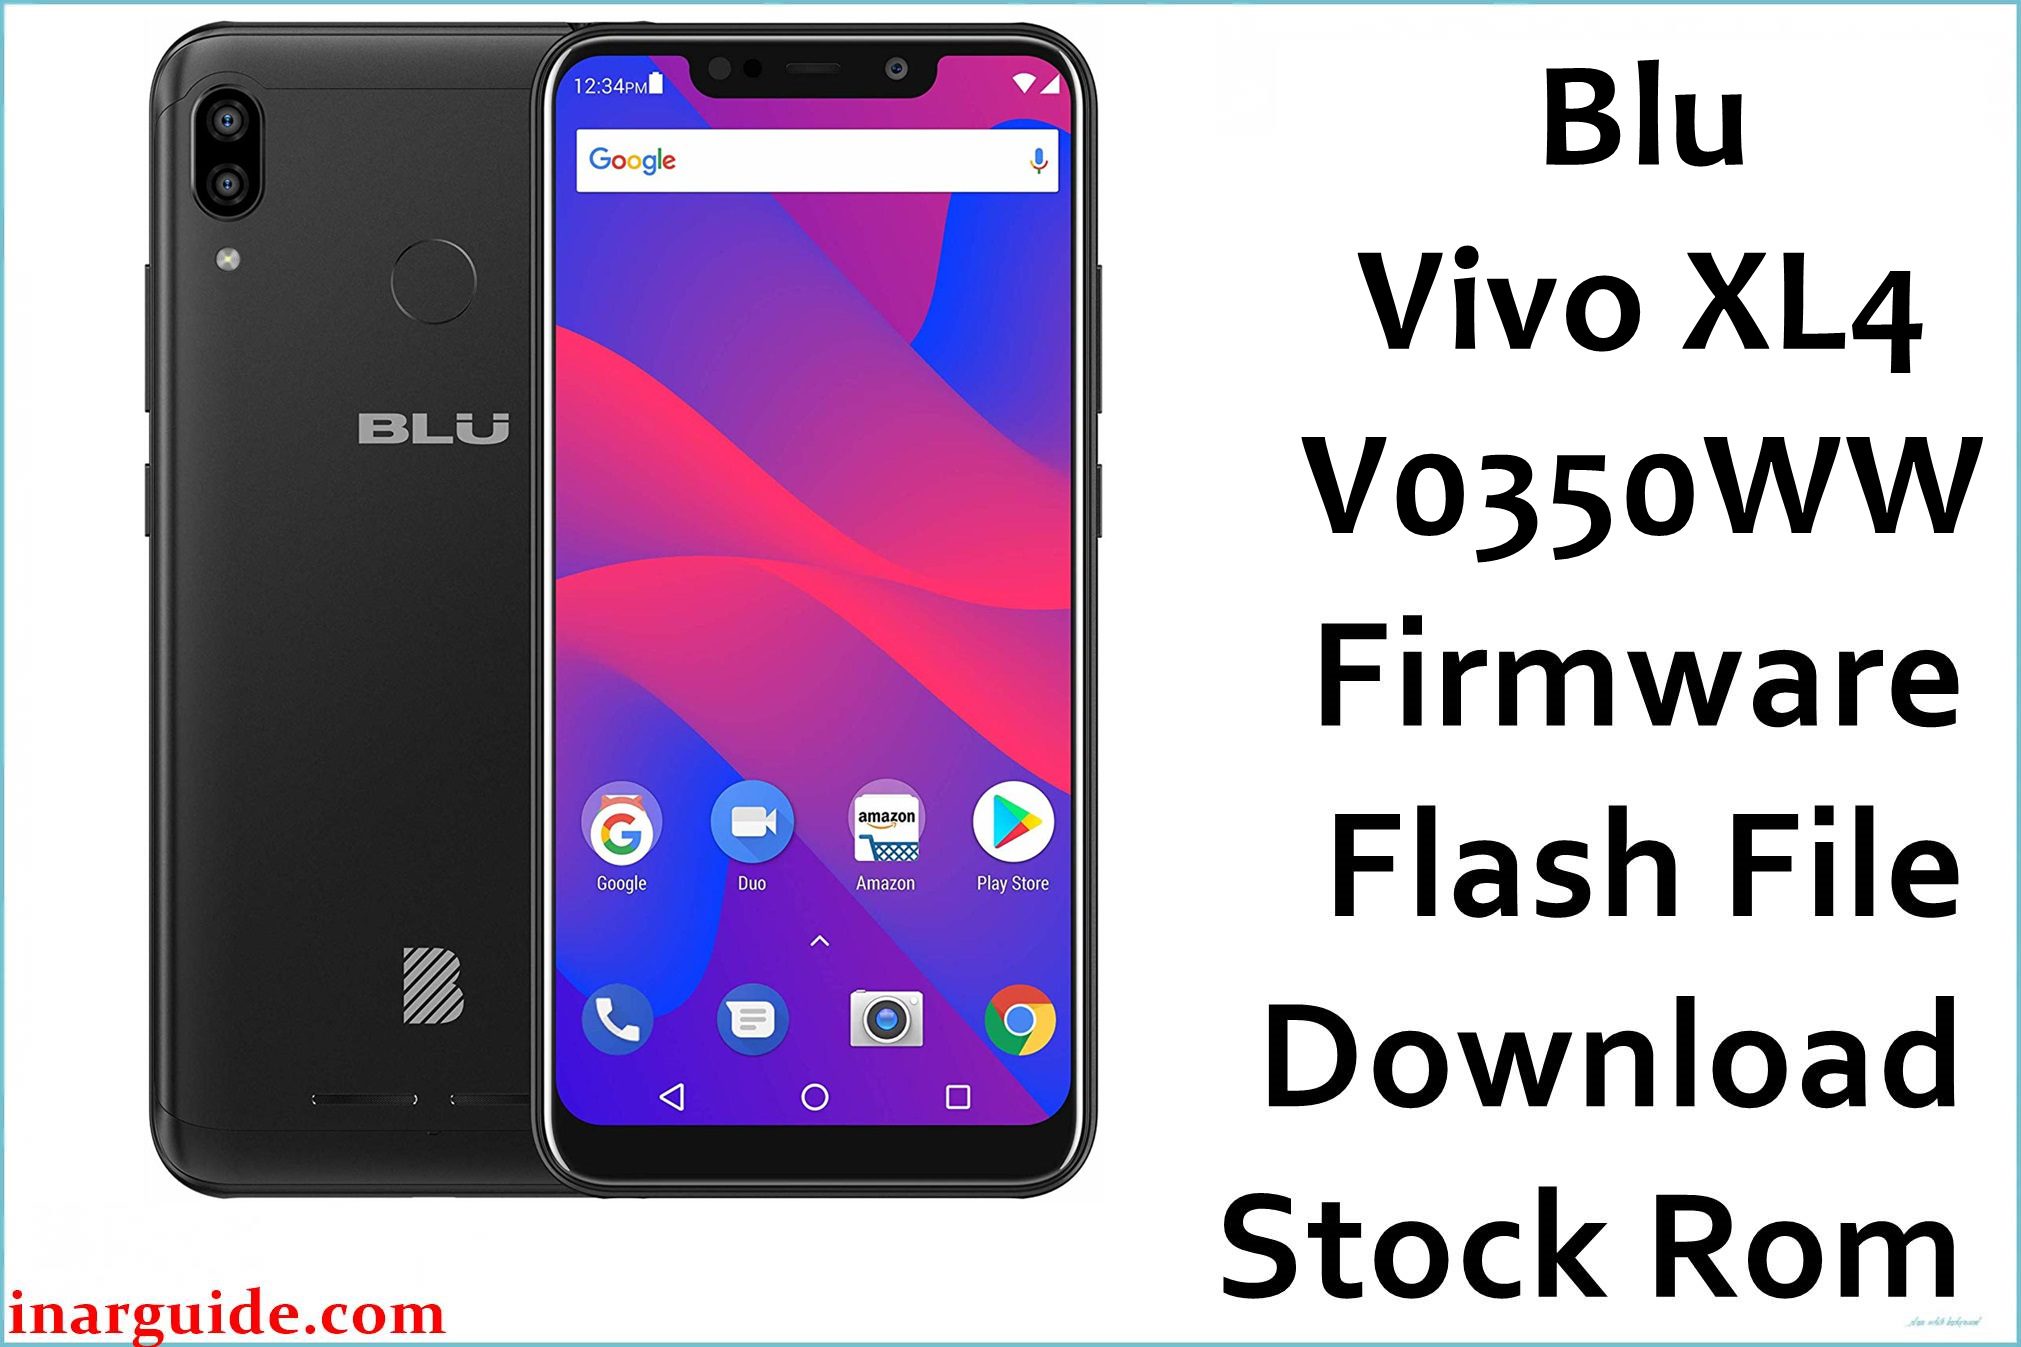 Blu Vivo XL4 V0350WW